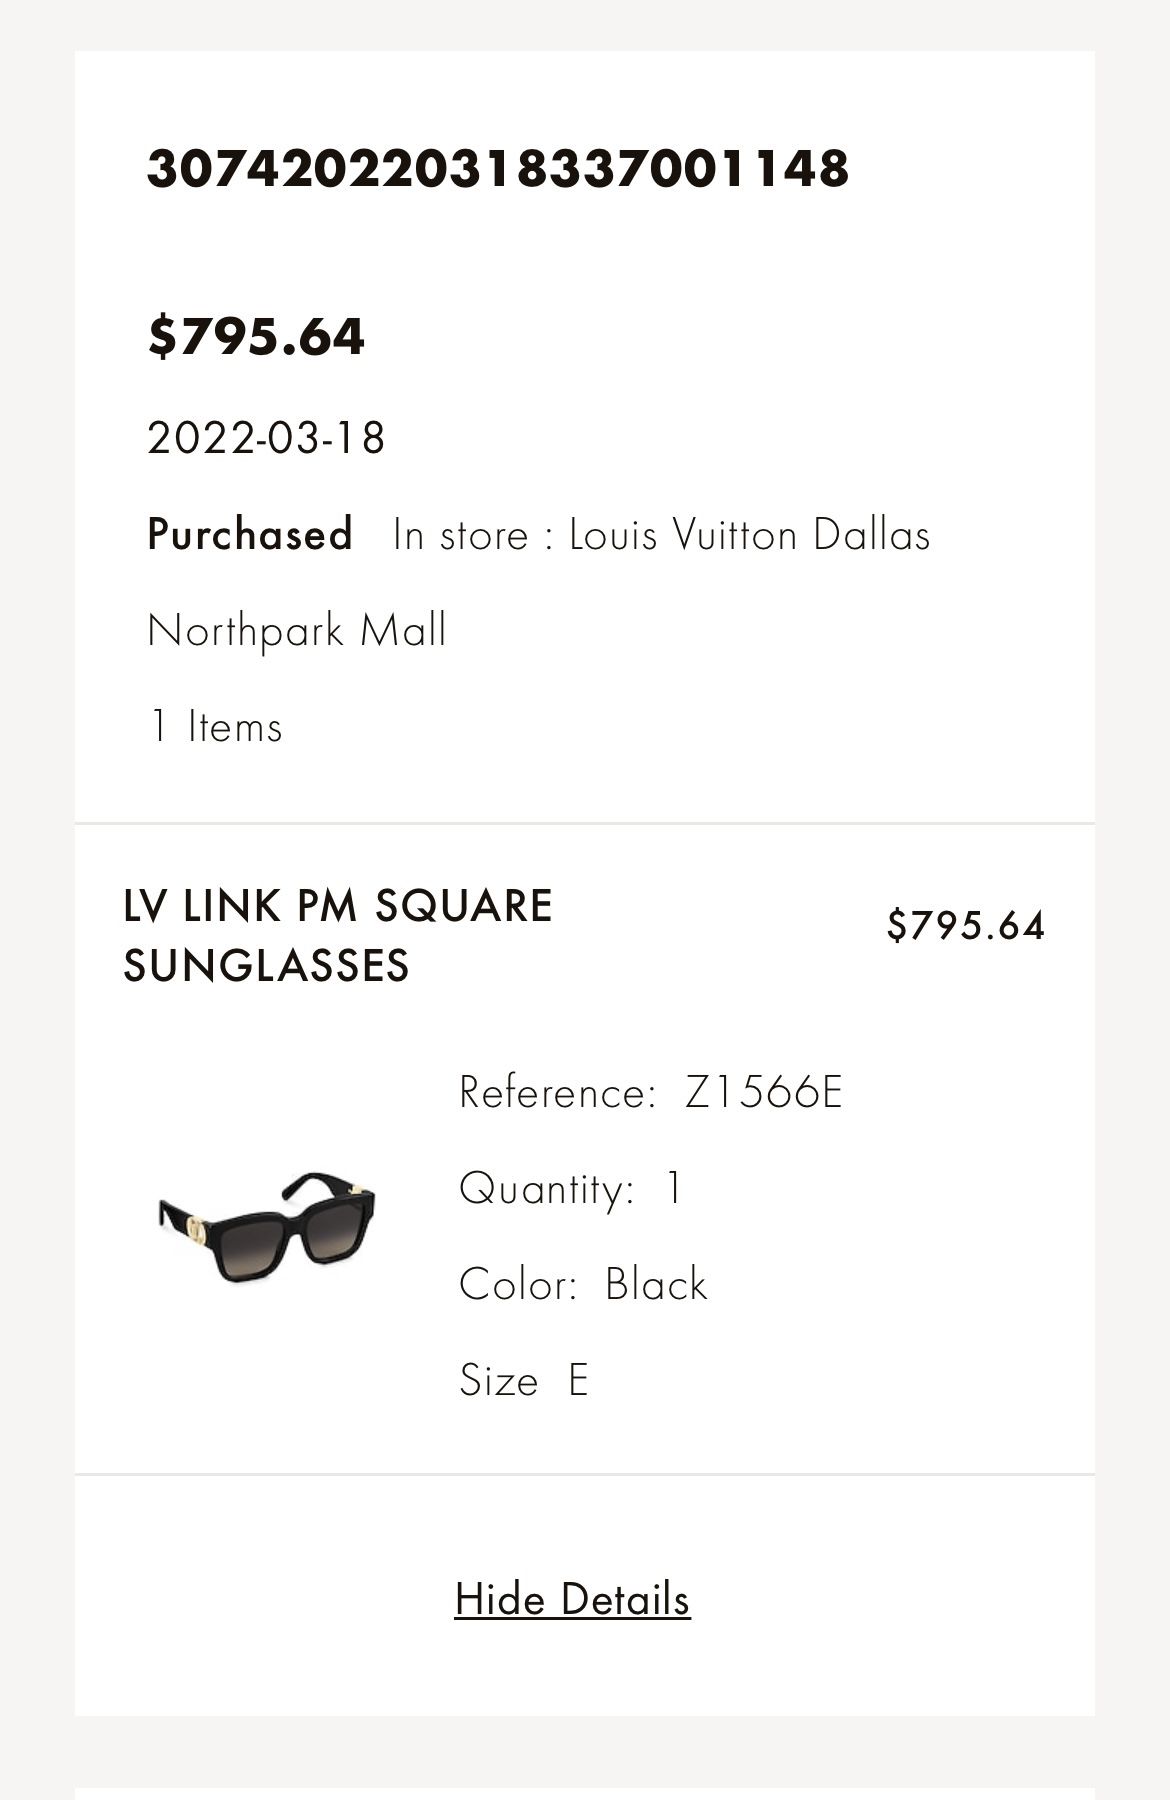 Authentic Louis Vuitton Sunglasses for Sale in Richardson, TX